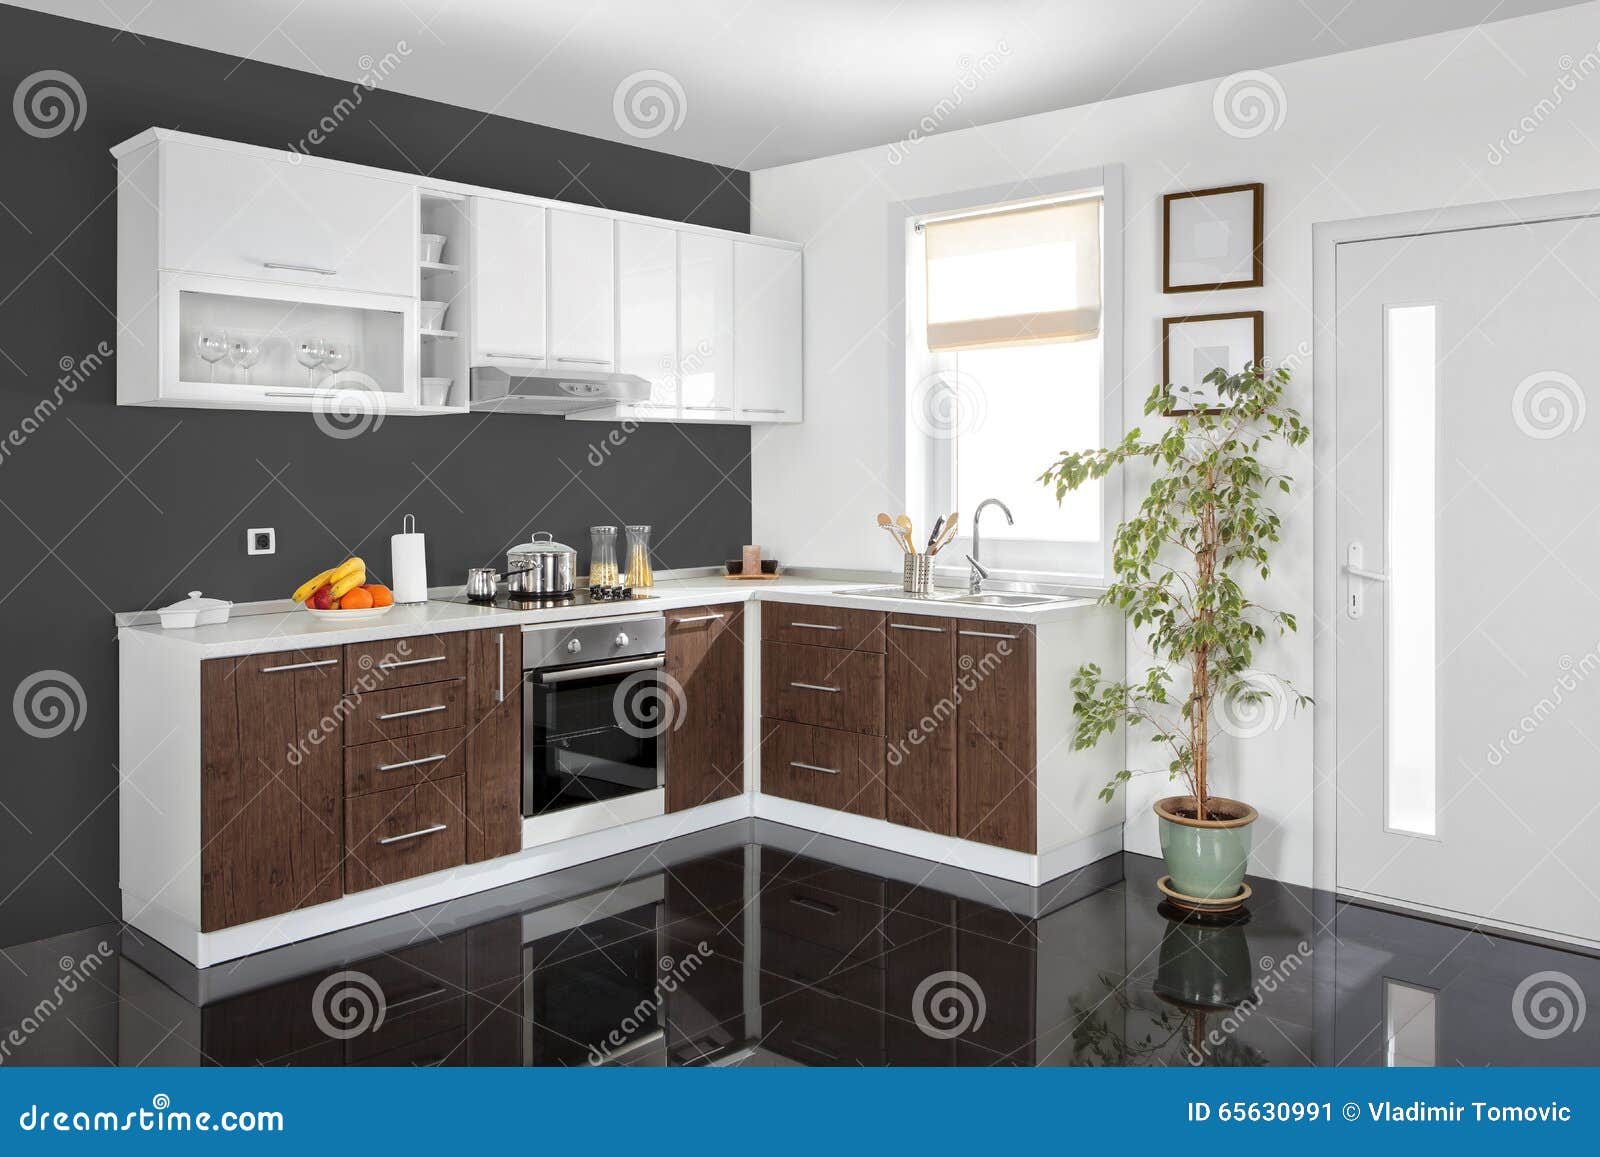 Interior De Una Cocina Moderna, Muebles De Madera, Simple Y Limpio